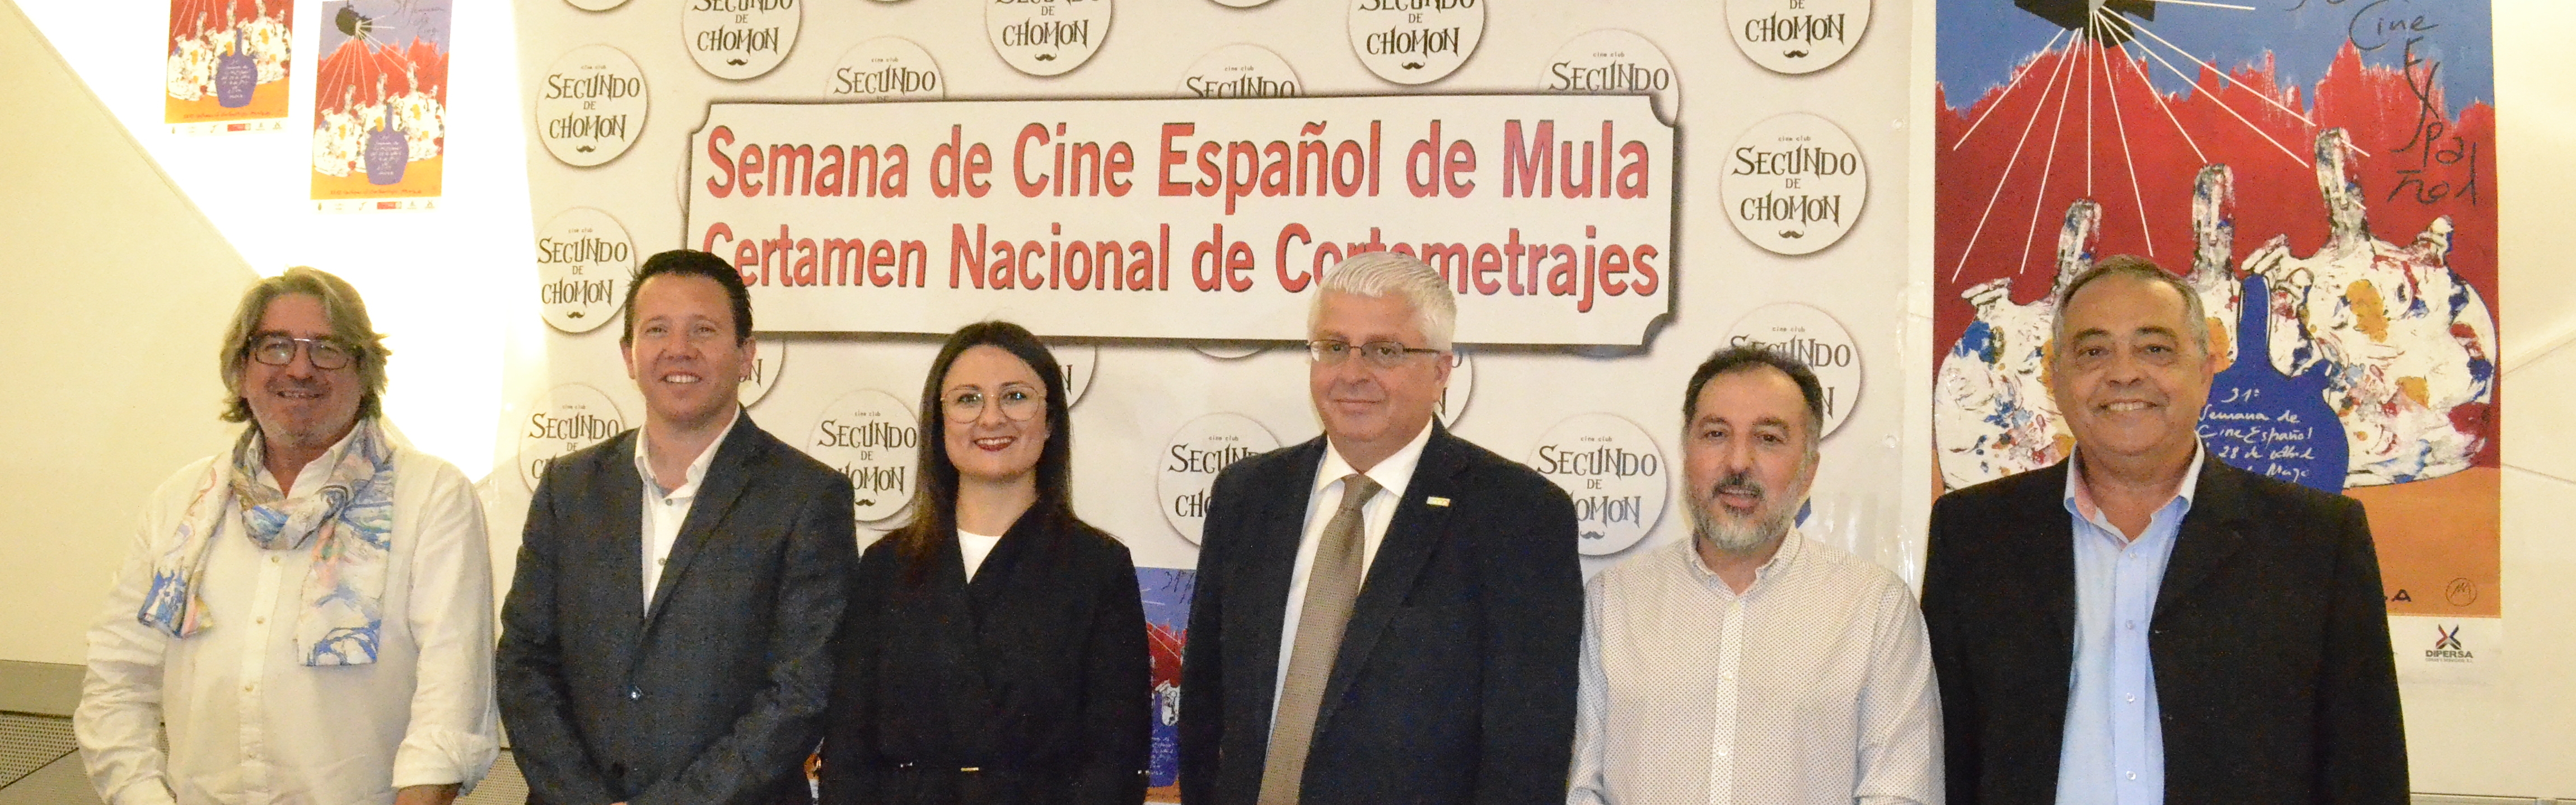 La XXXI Semana de Cine español de Mula y el XXVI Certamen Nacional  de Cortos se presentan en el Rectorado de la UMU